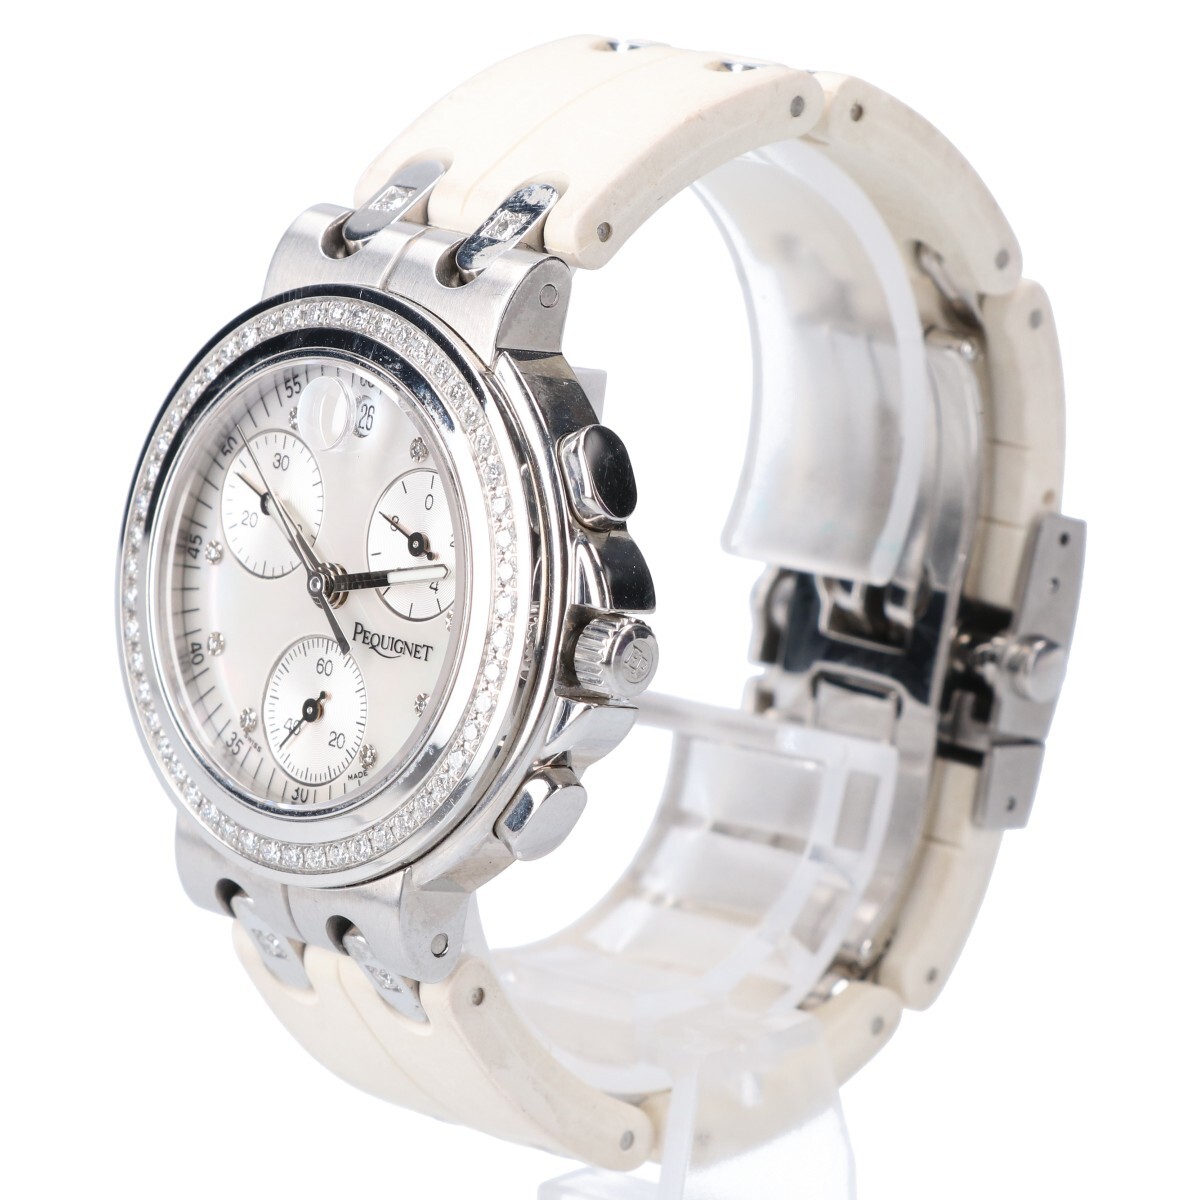 PEQUIGNET ペキニエ 1322509 クロノグラフ ダイヤモンドベゼル ラバーベルト クオーツ 腕時計の画像2